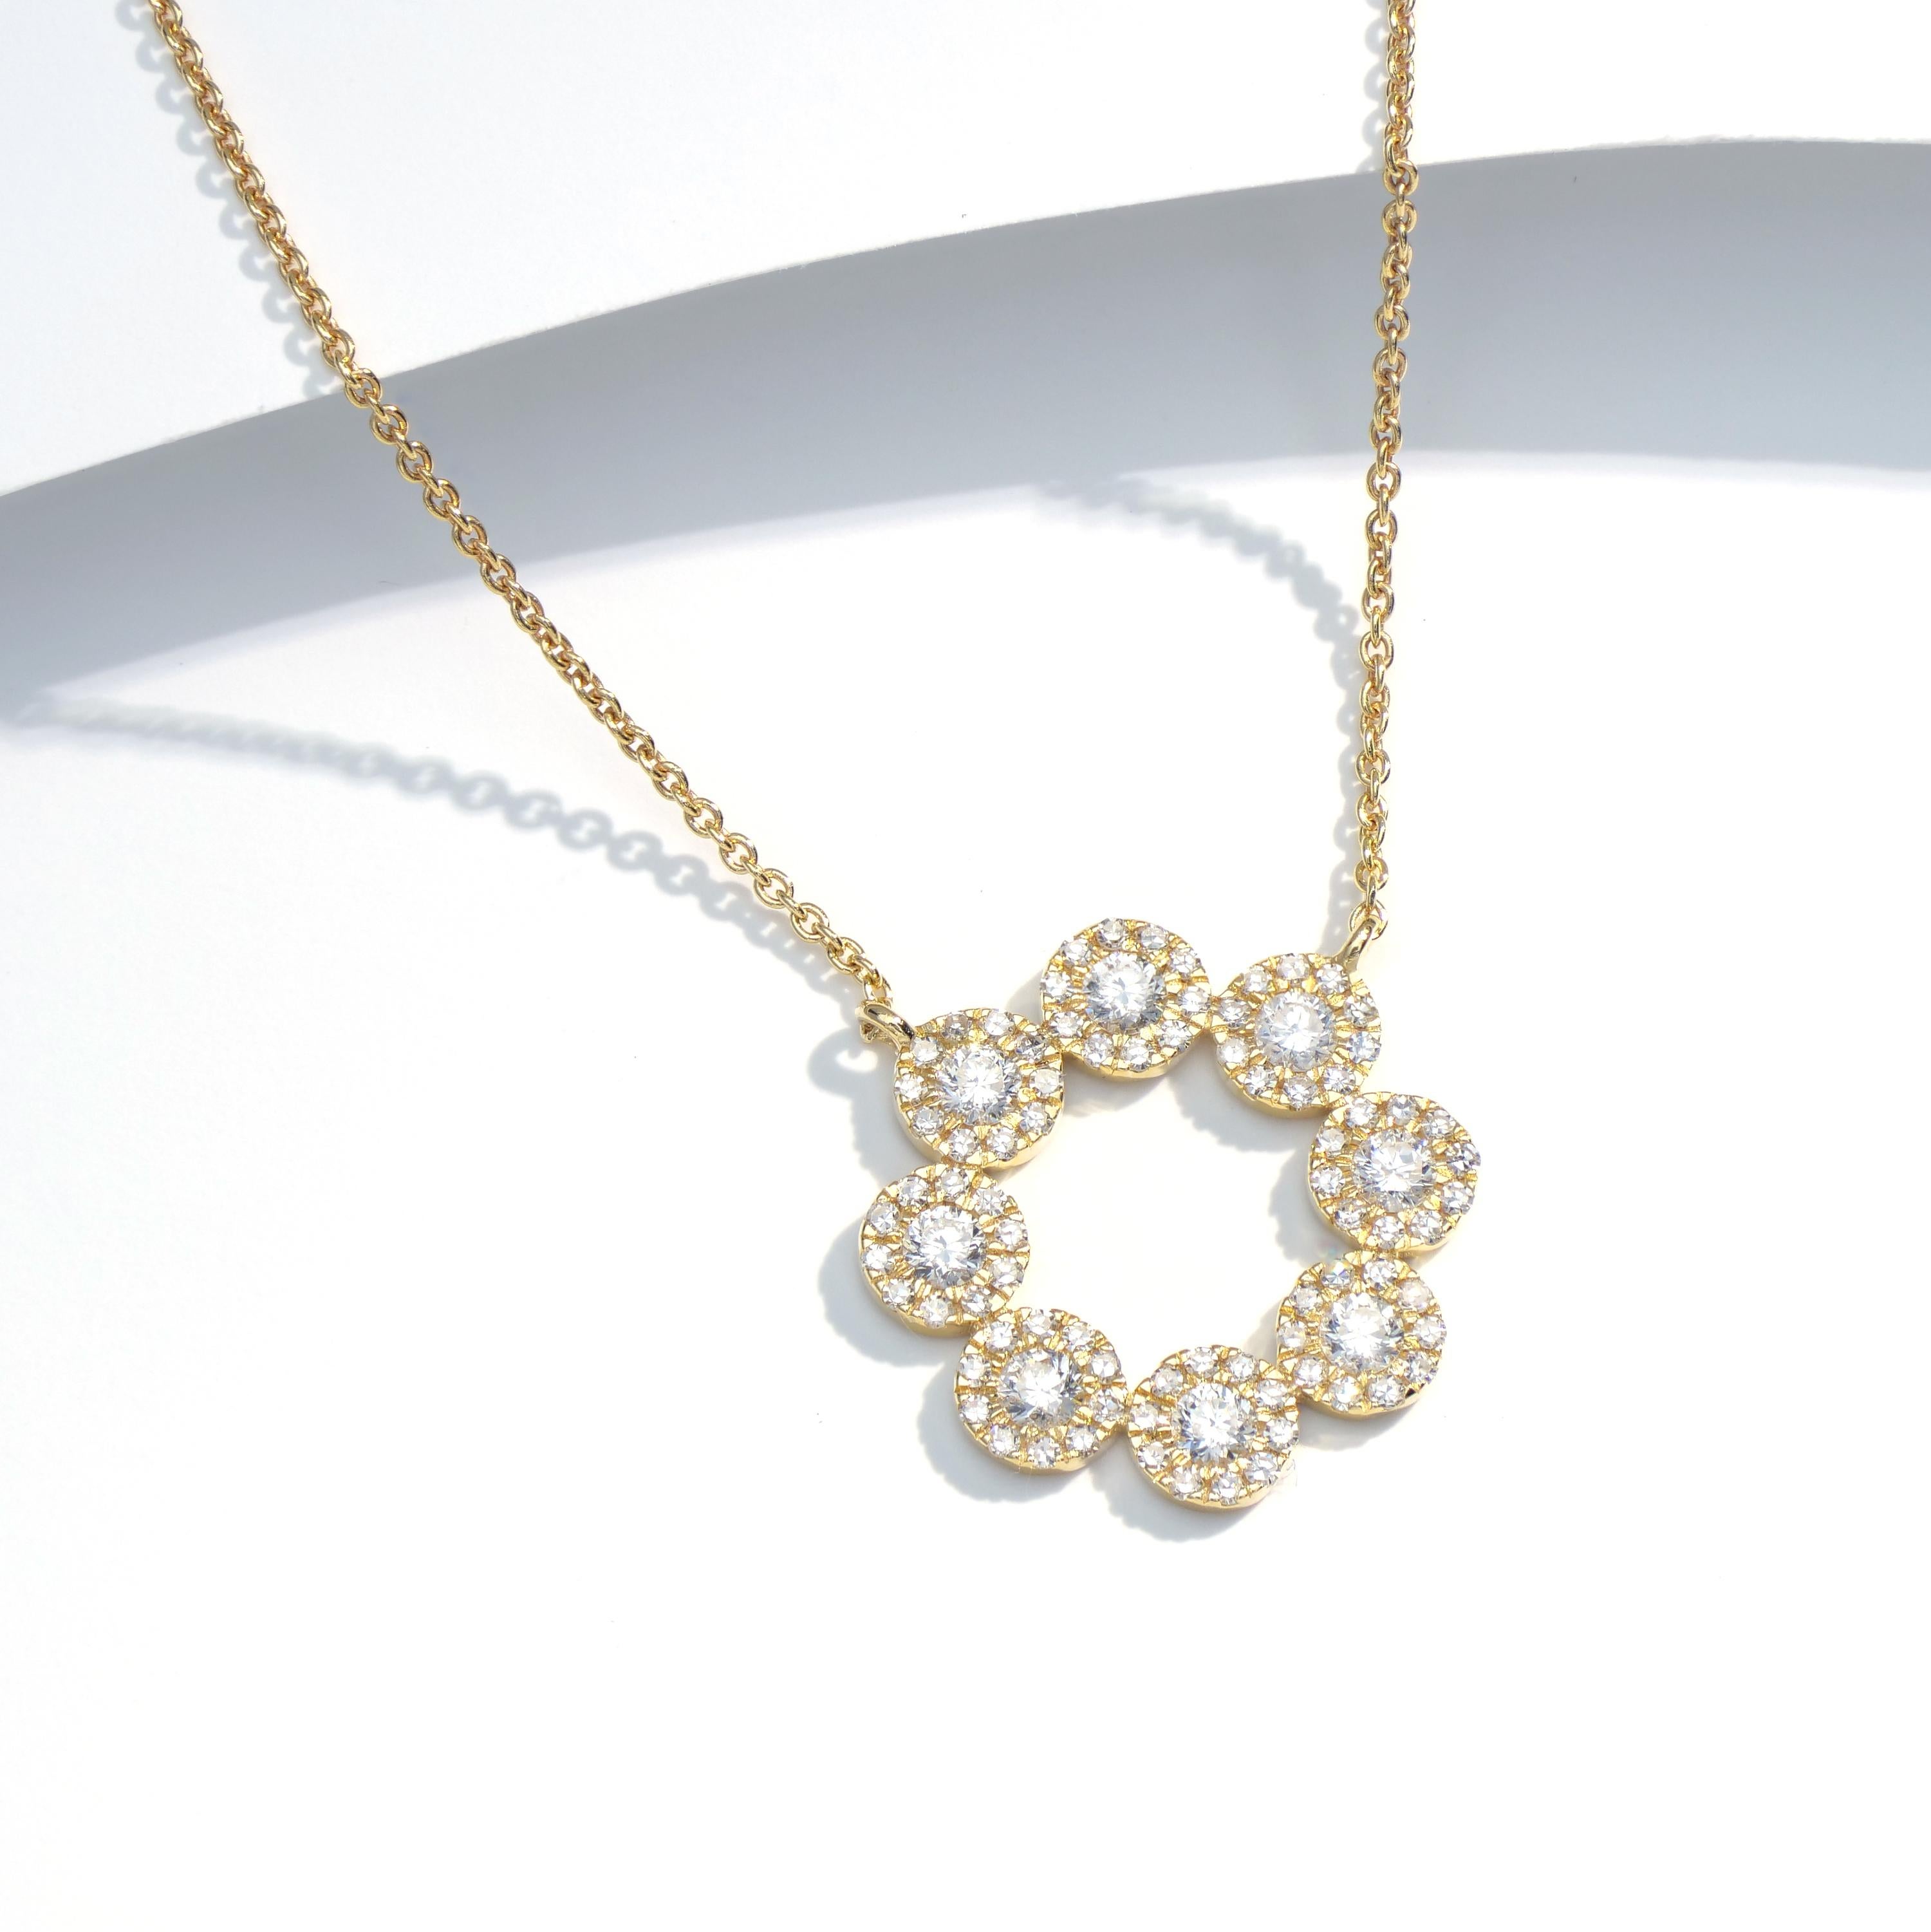 Bewundern Sie die schlichte Brillanz einer 14K Gelbgold Luxle Diamant-Halskette mit Anhänger. Diese Halskette besteht aus vielen kreisförmigen Motiven, die sich anmutig miteinander verbinden und dieses schöne Stück einrahmen. Dieser Anhänger hängt